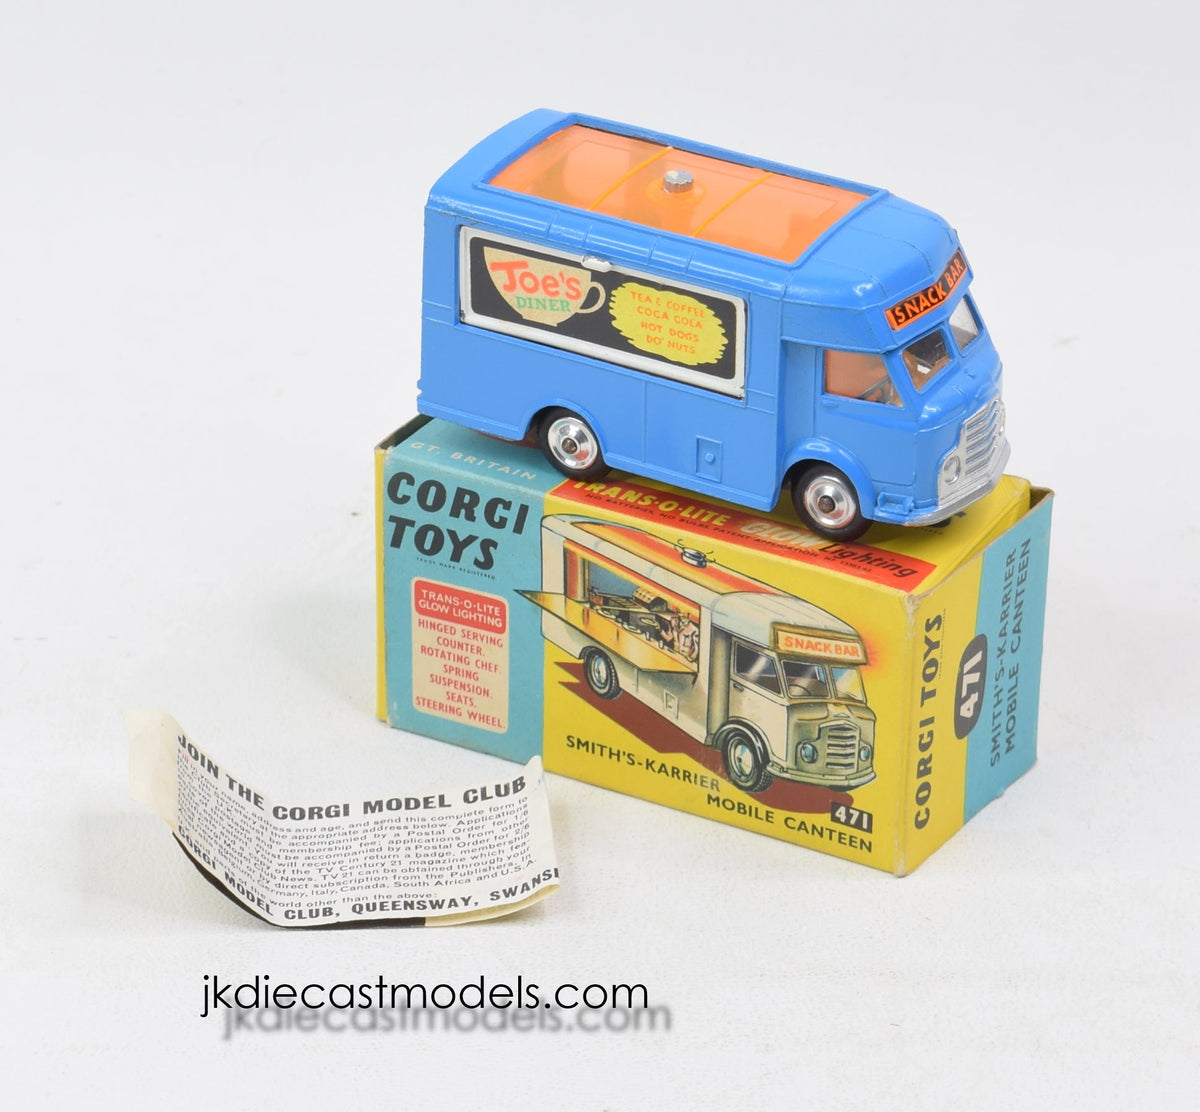 Corgi toys 471 Smith's-Karrier Mobile Canteen Virtually Mint/Boxed ‘Swansea Collection'